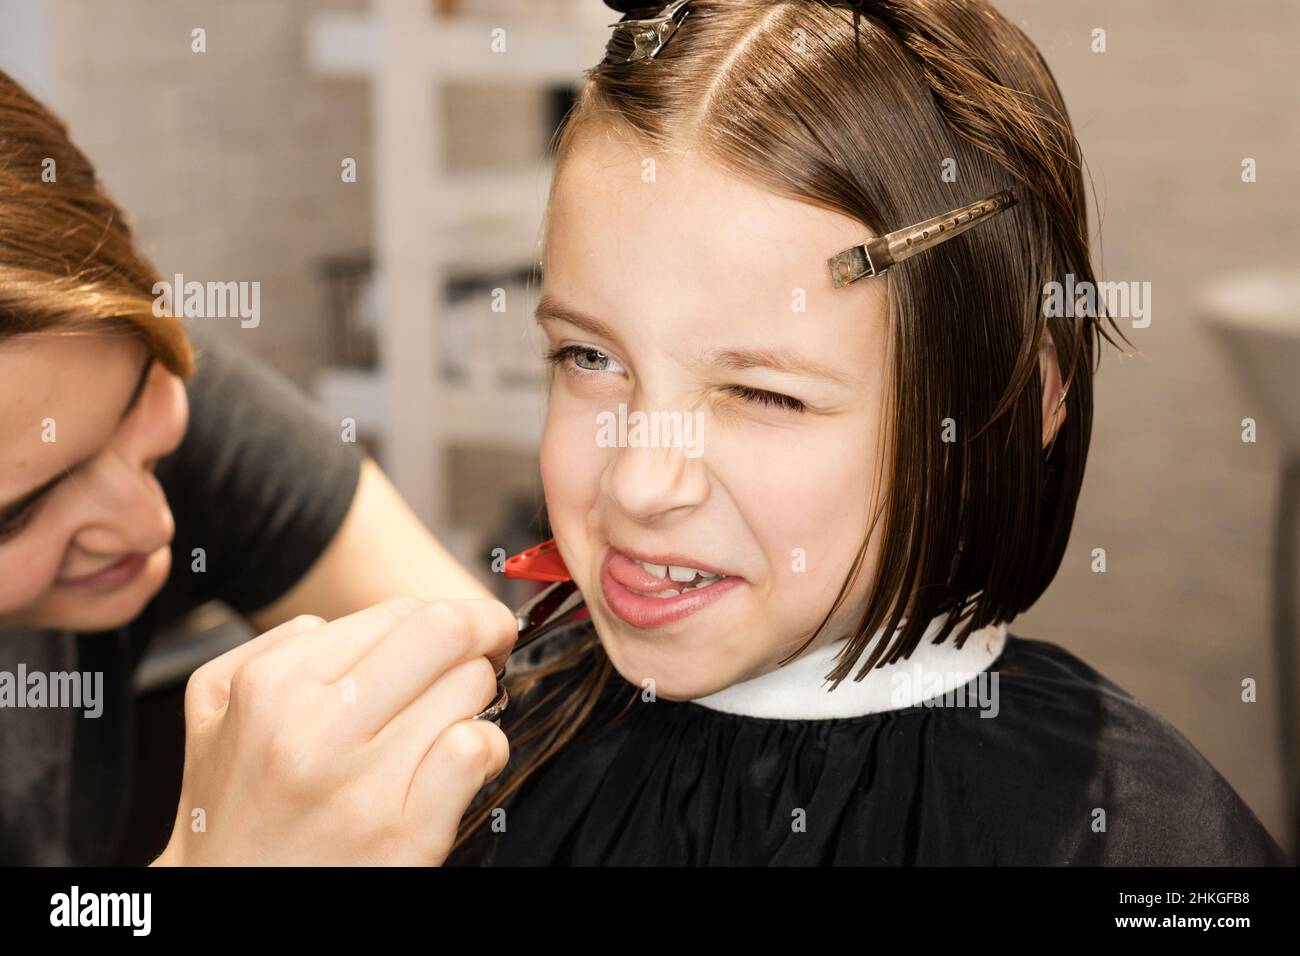 Wunderschöne glückliche kurzhaarige kleine Mädchen macht Grimassen in Friseurladen in Prozess des Schneidens der Haare in Schönheitssalon. Frisur für Kinder. Moderne Kinder Kurz Bob Haarschnitt Stockfoto